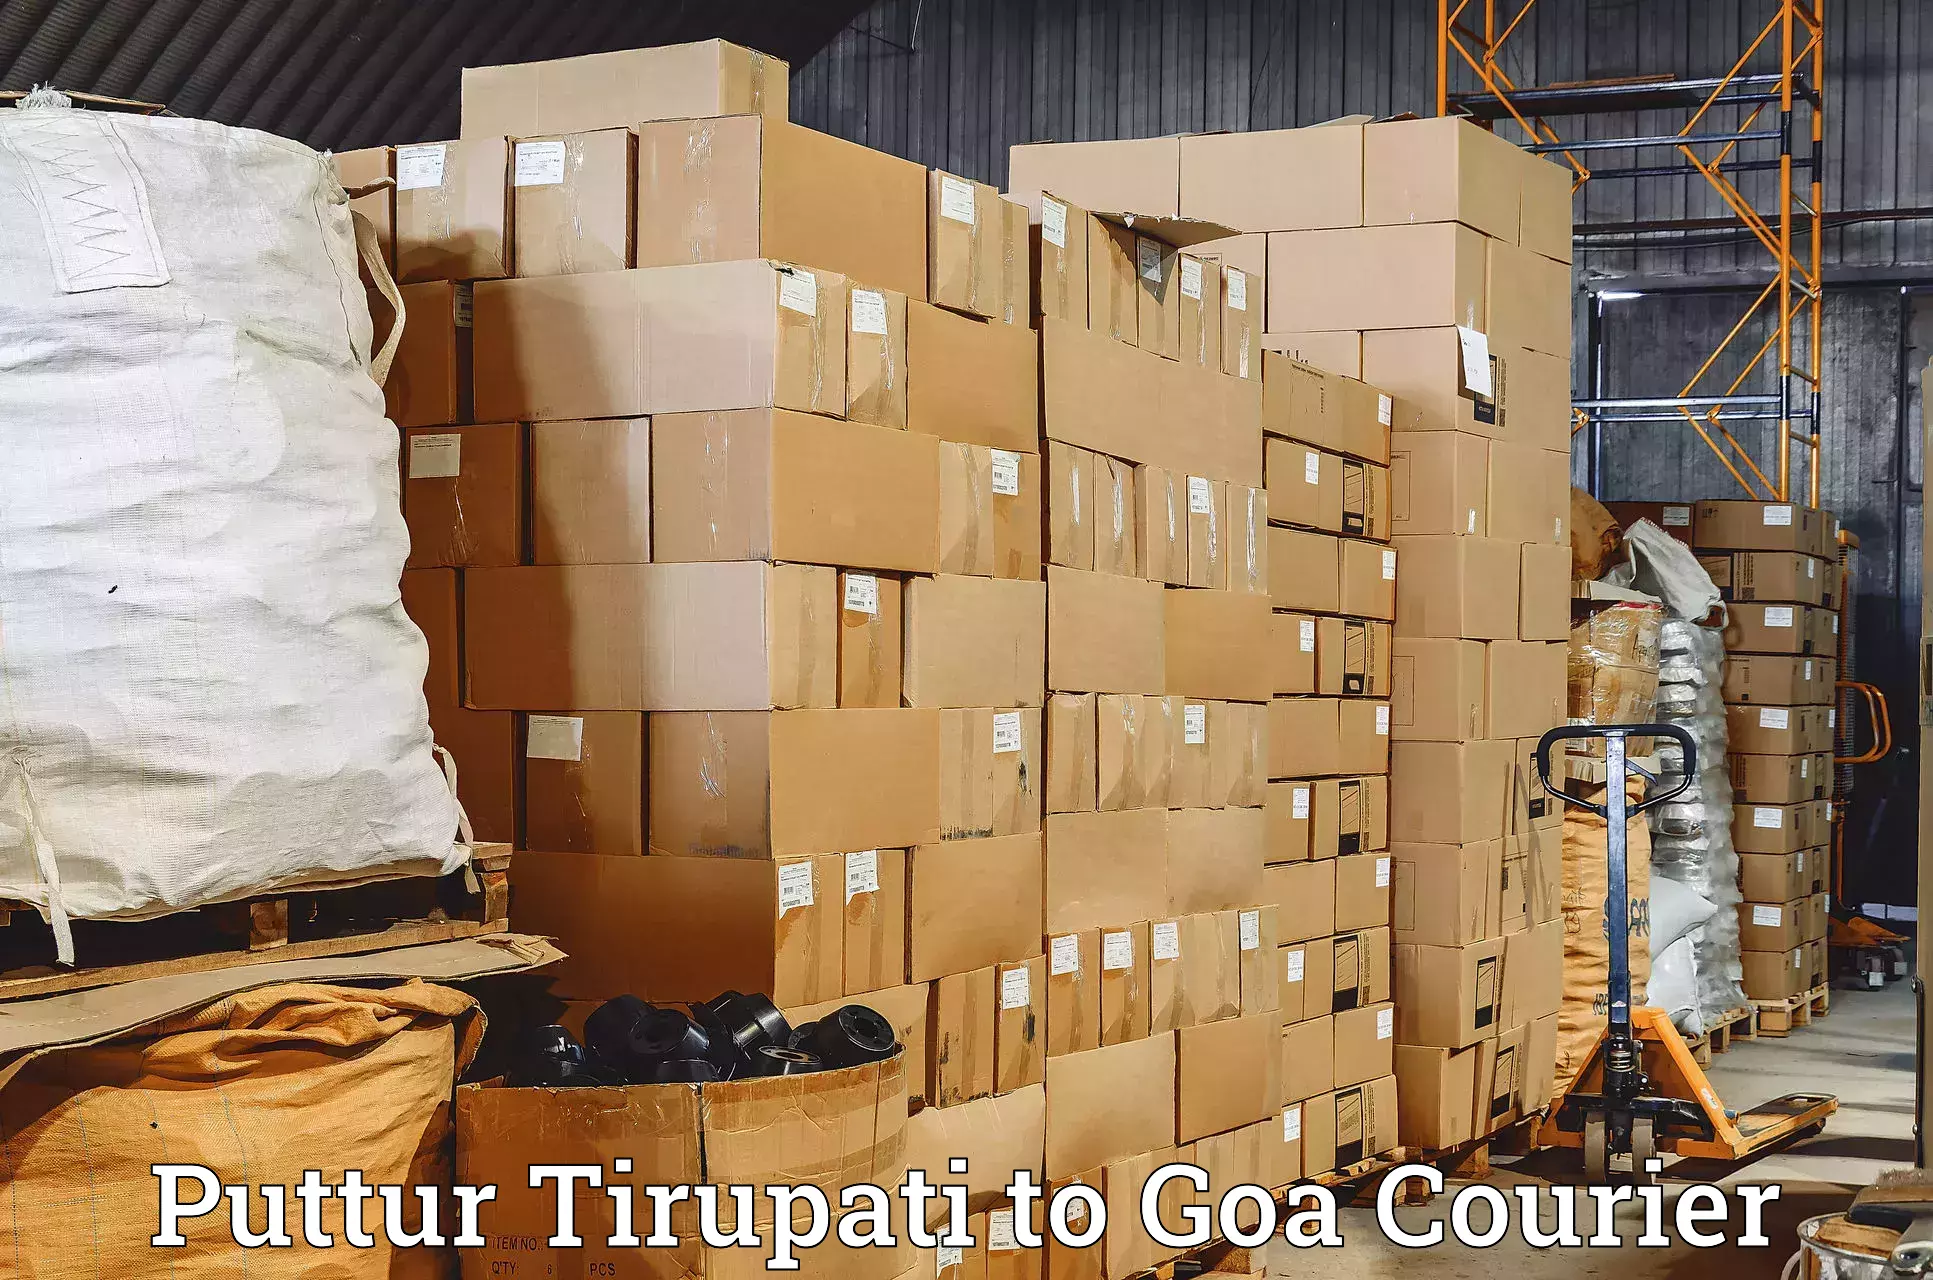 Efficient parcel delivery Puttur Tirupati to South Goa